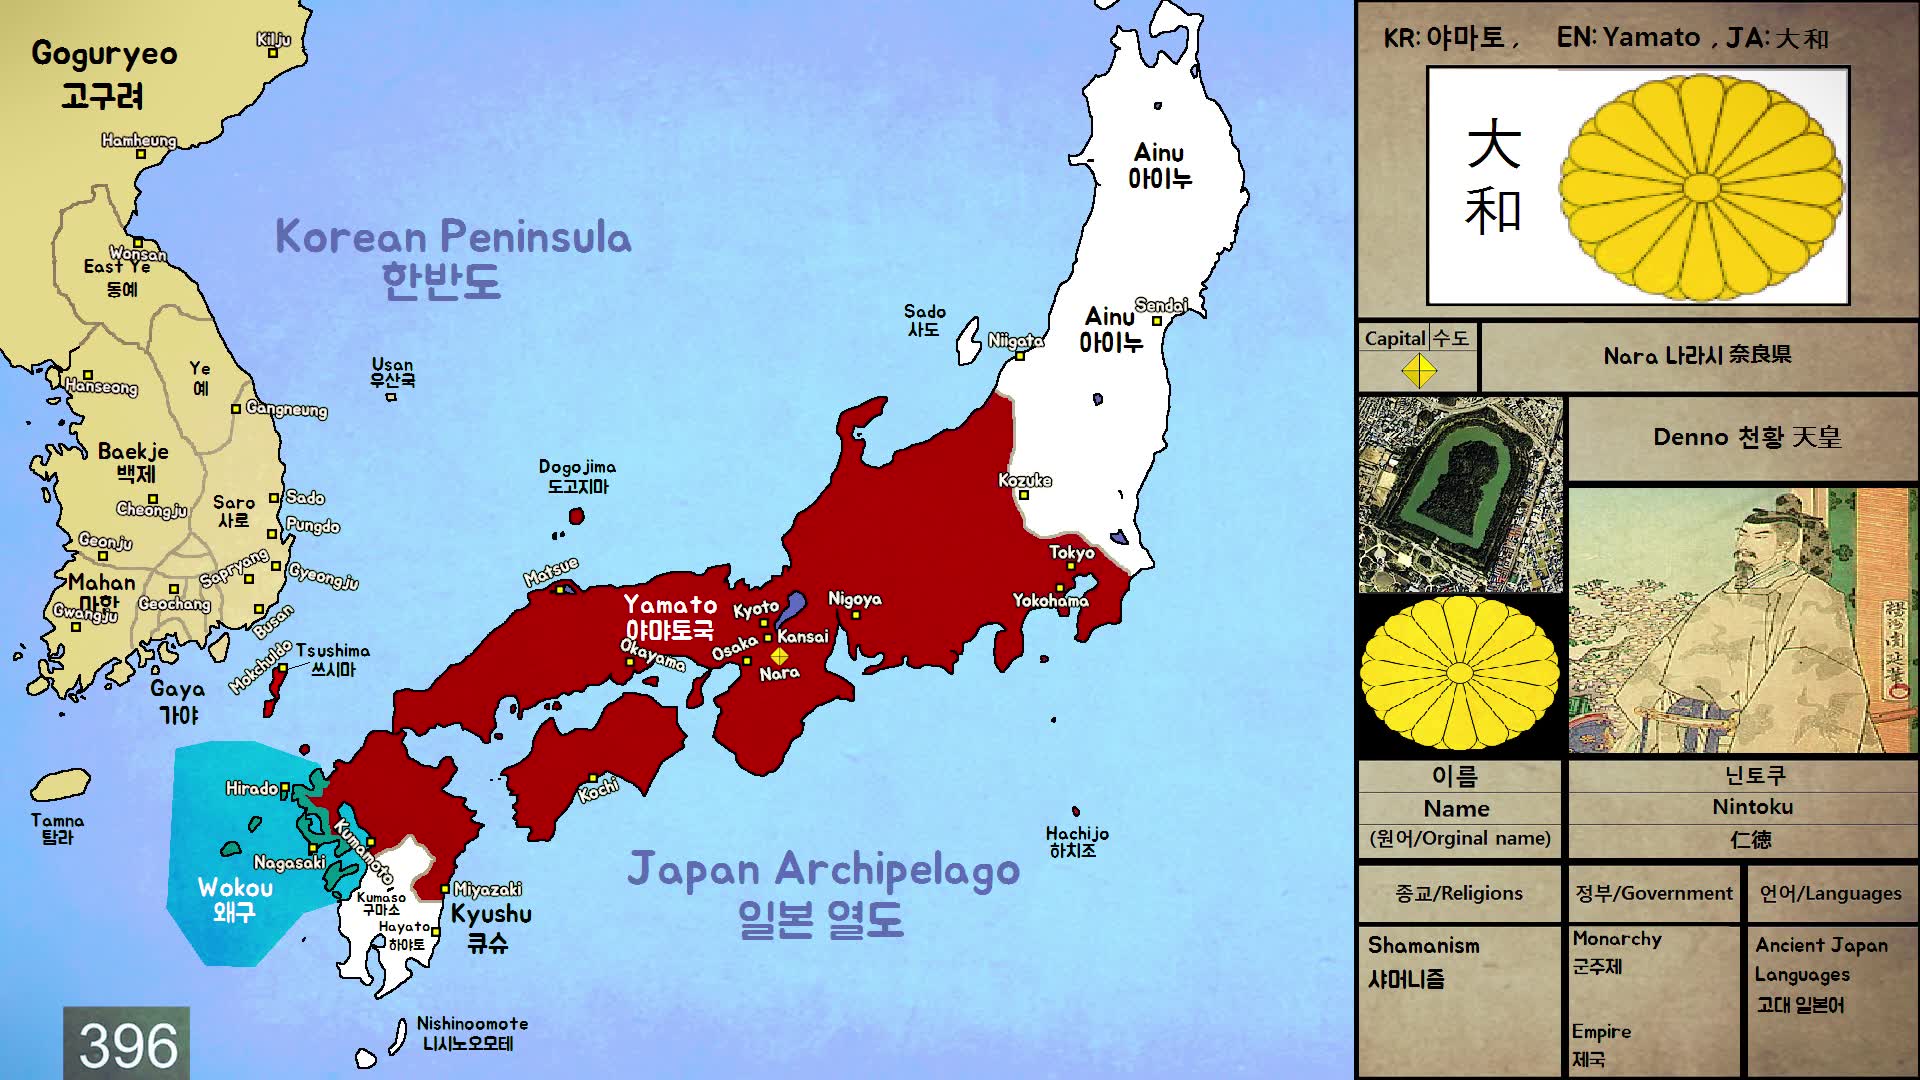 【历史地图】古代日本疆域历史变化图(公元前660年91公元710年)